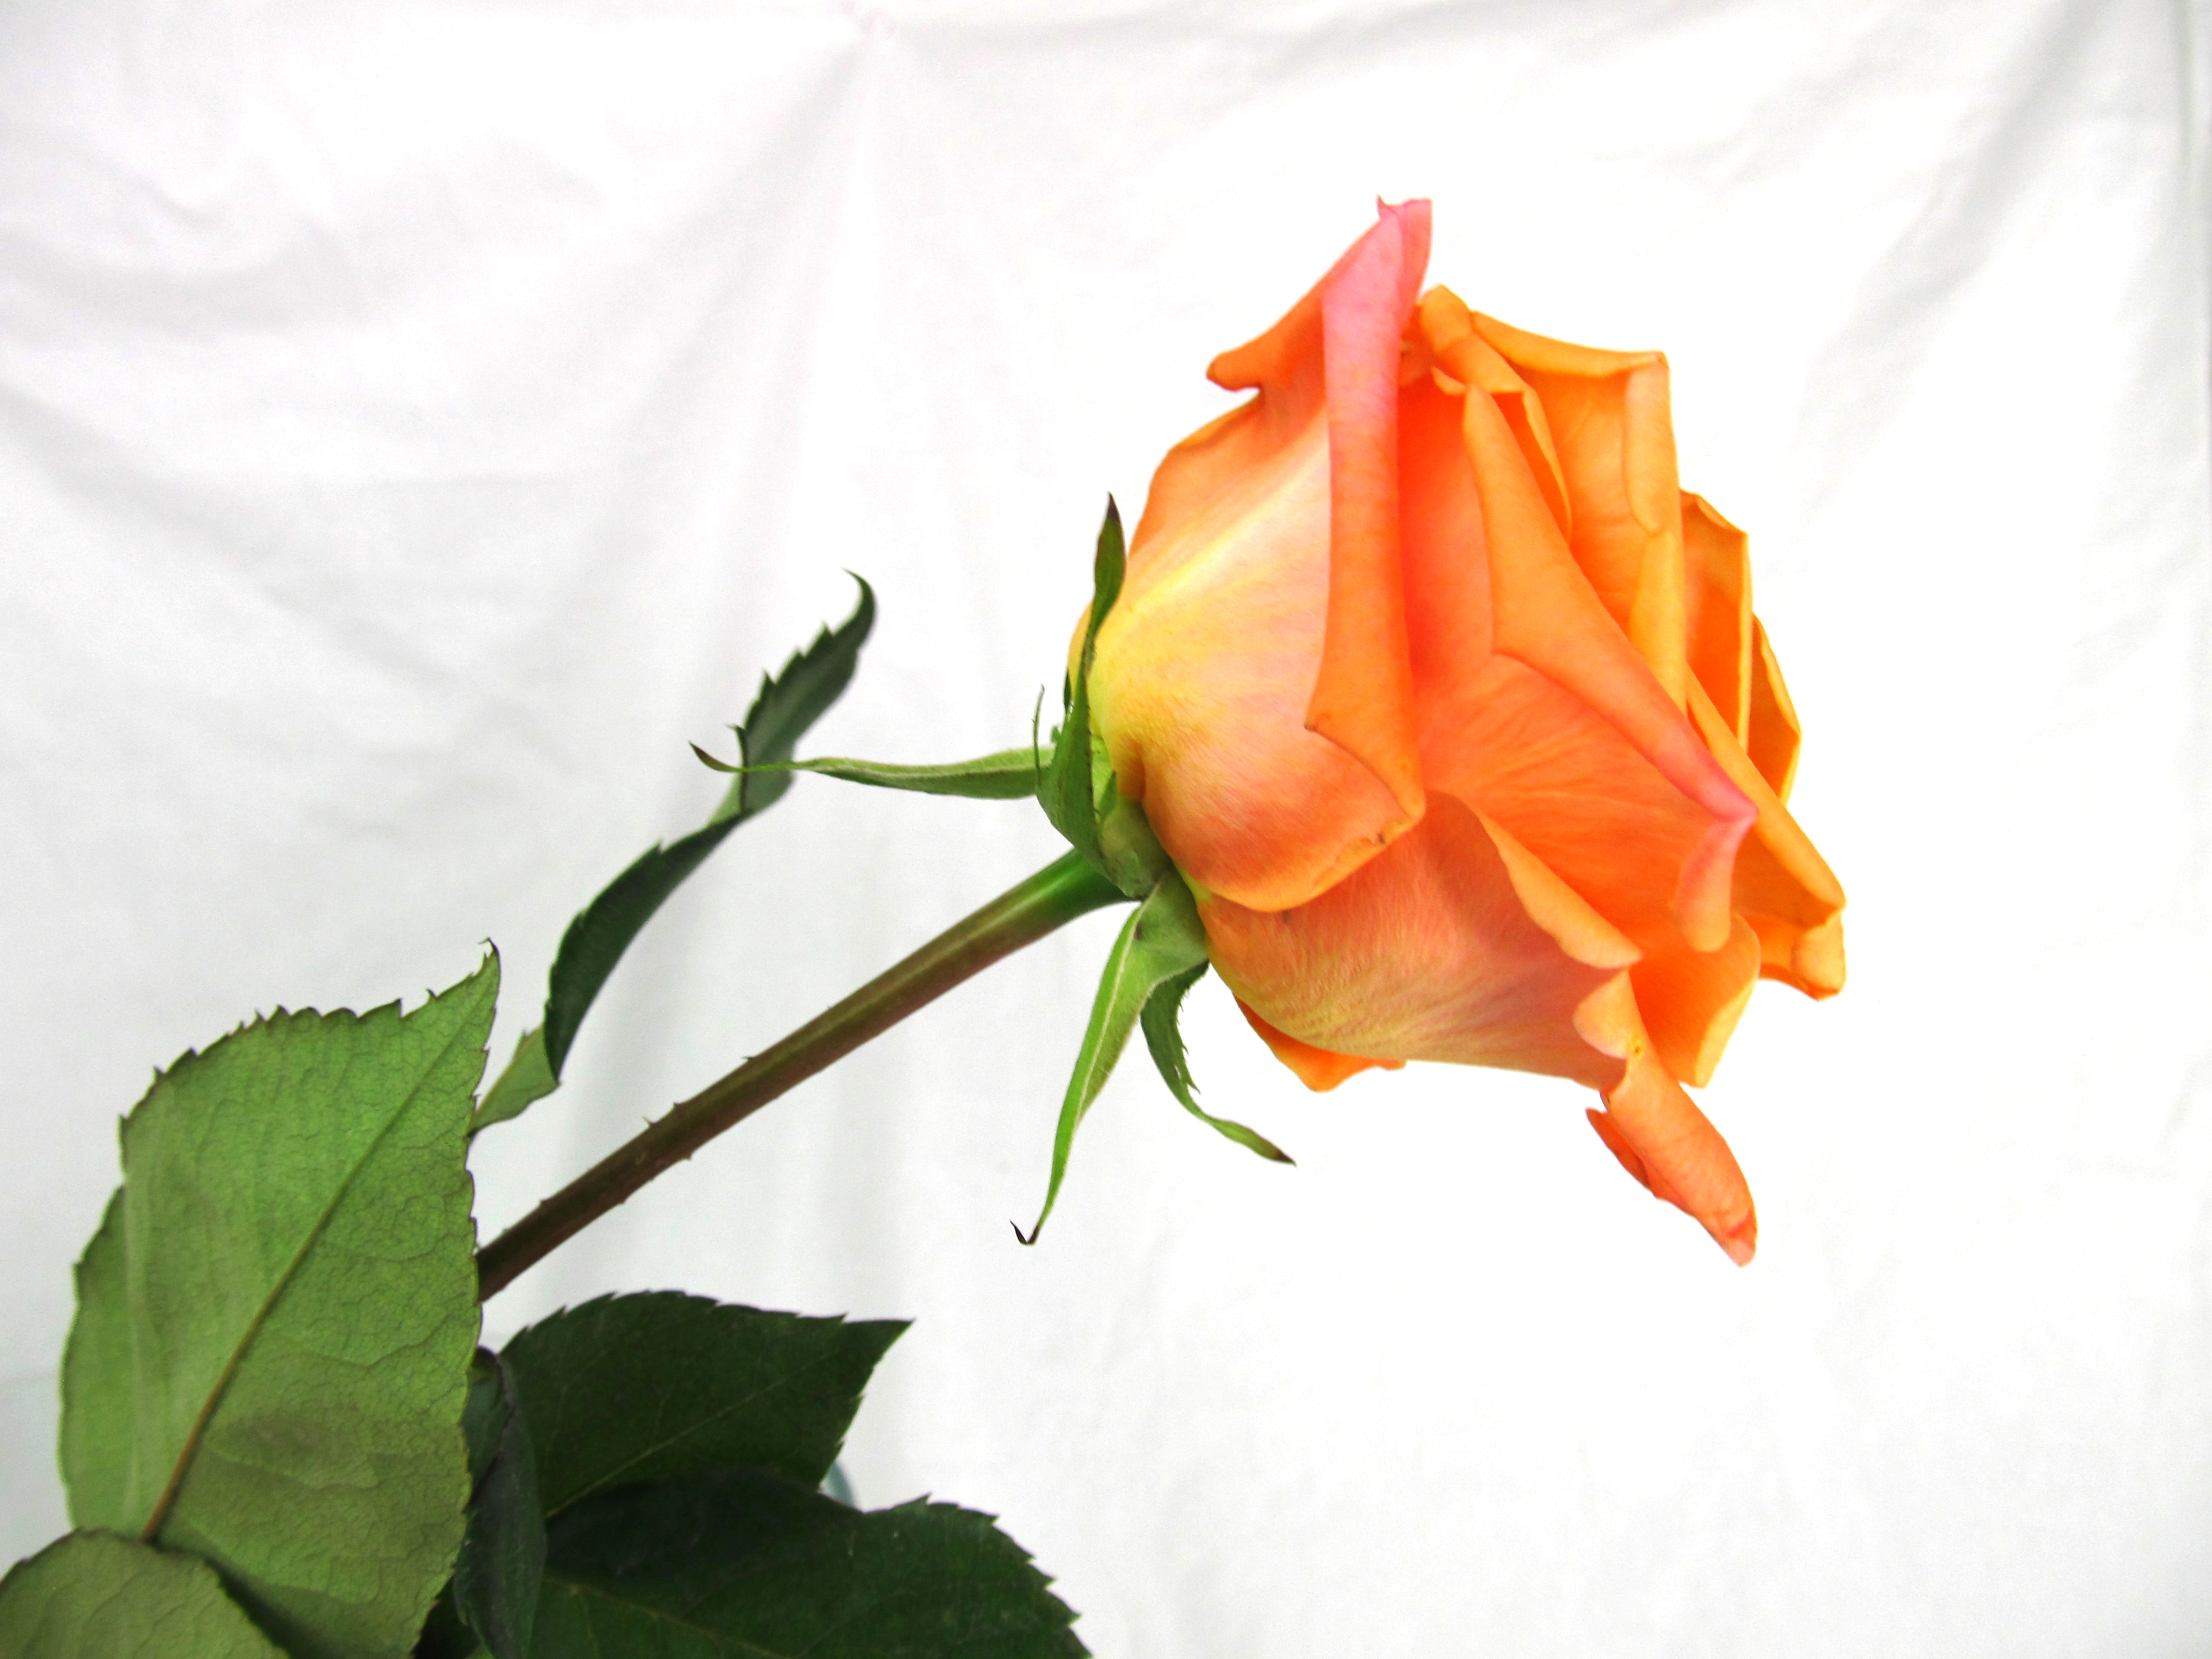 Orange Unique Rose